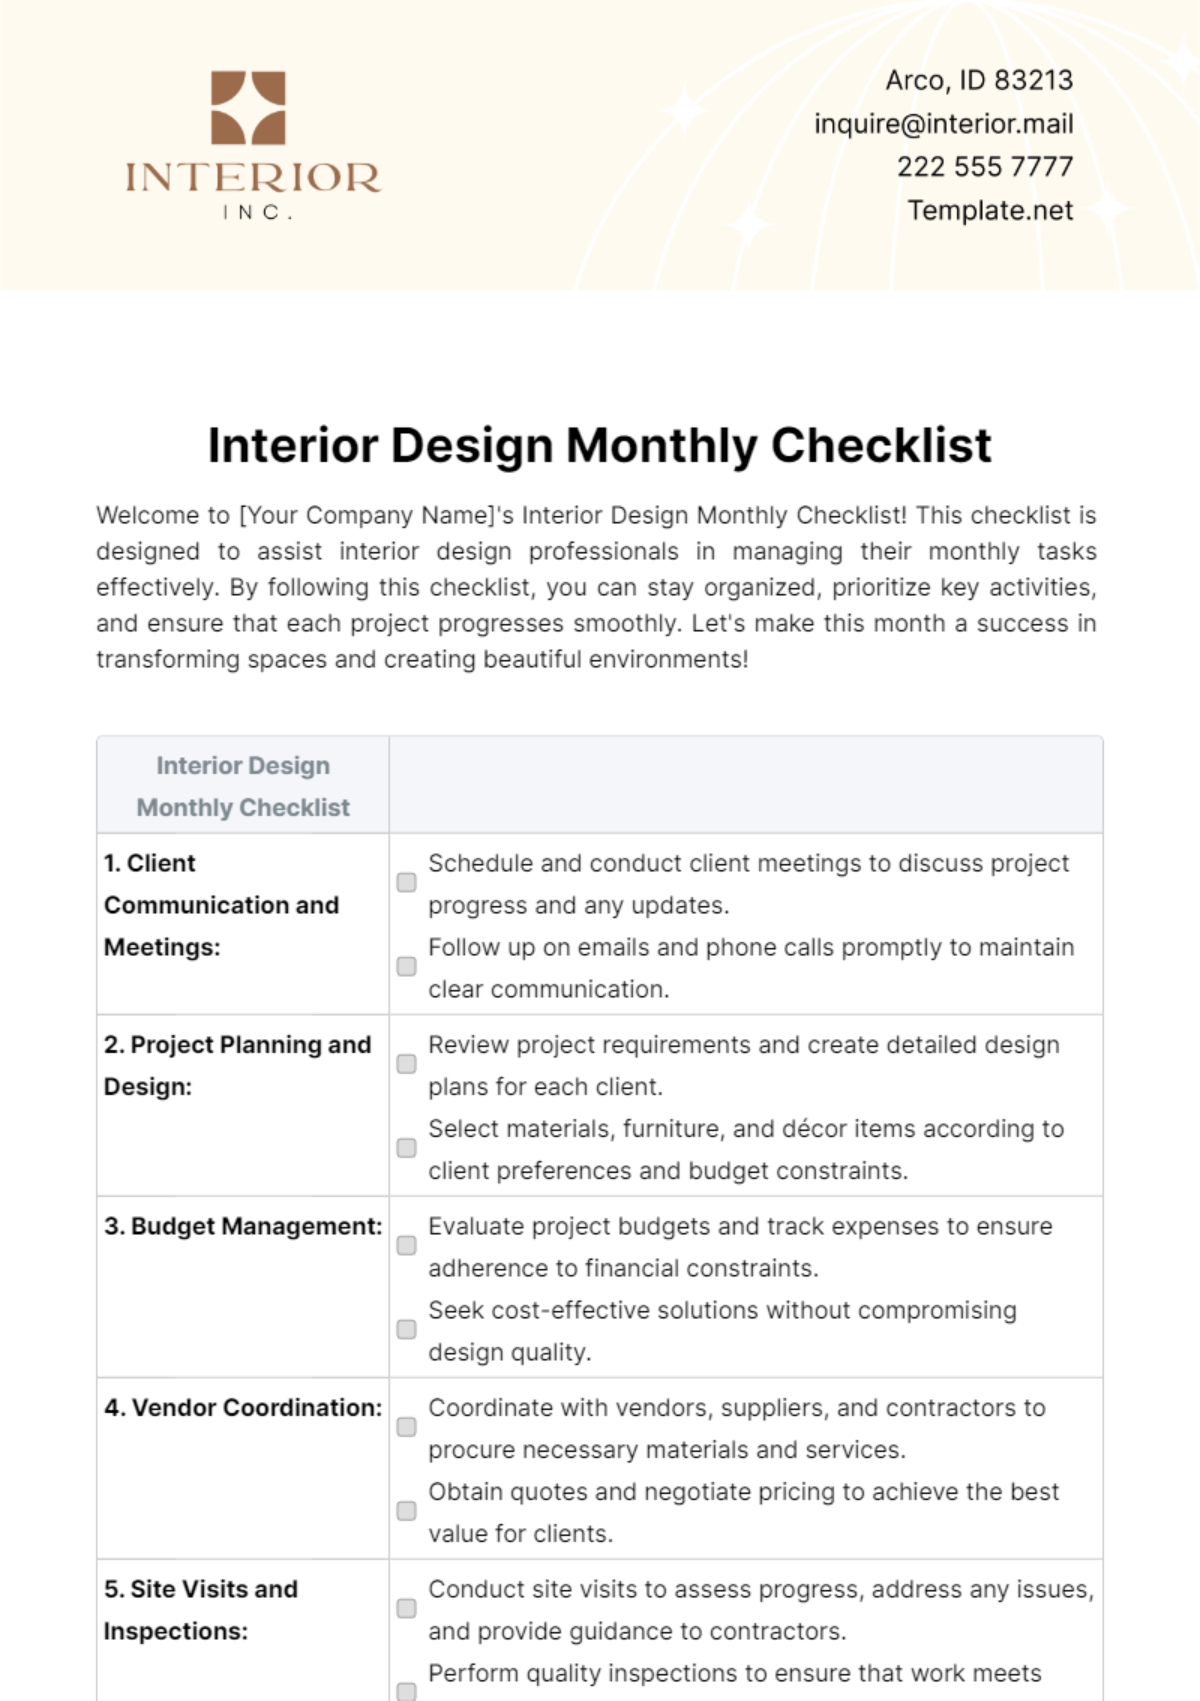 Free Interior Design Monthly Checklist Template